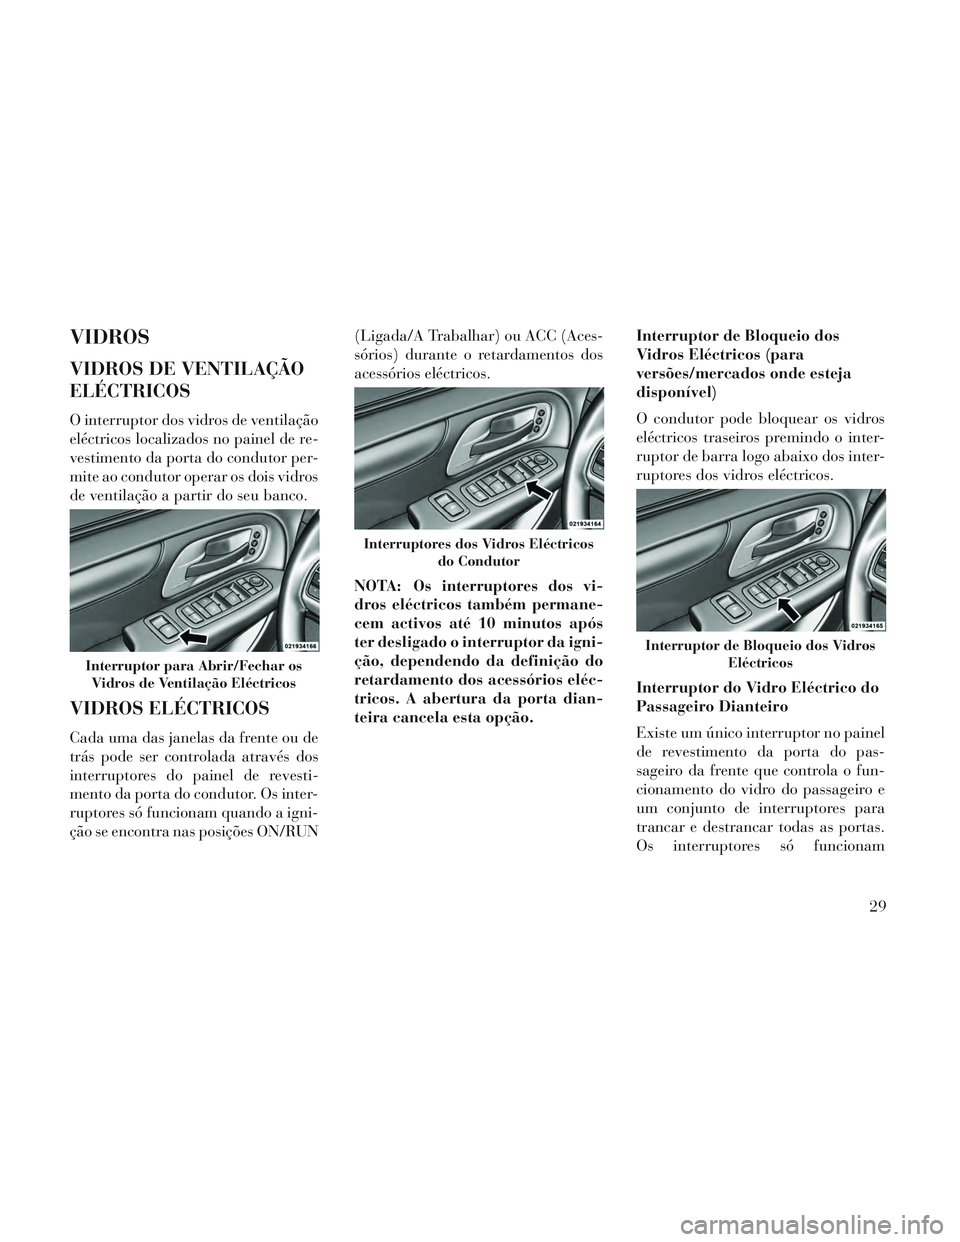 Lancia Voyager 2014  Manual de Uso e Manutenção (in Portuguese) VIDROS
VIDROS DE VENTILAÇÃO
ELÉCTRICOS
O interruptor dos vidros de ventilação
eléctricos localizados no painel de re-
vestimento da porta do condutor per-
mite ao condutor operar os dois vidros
